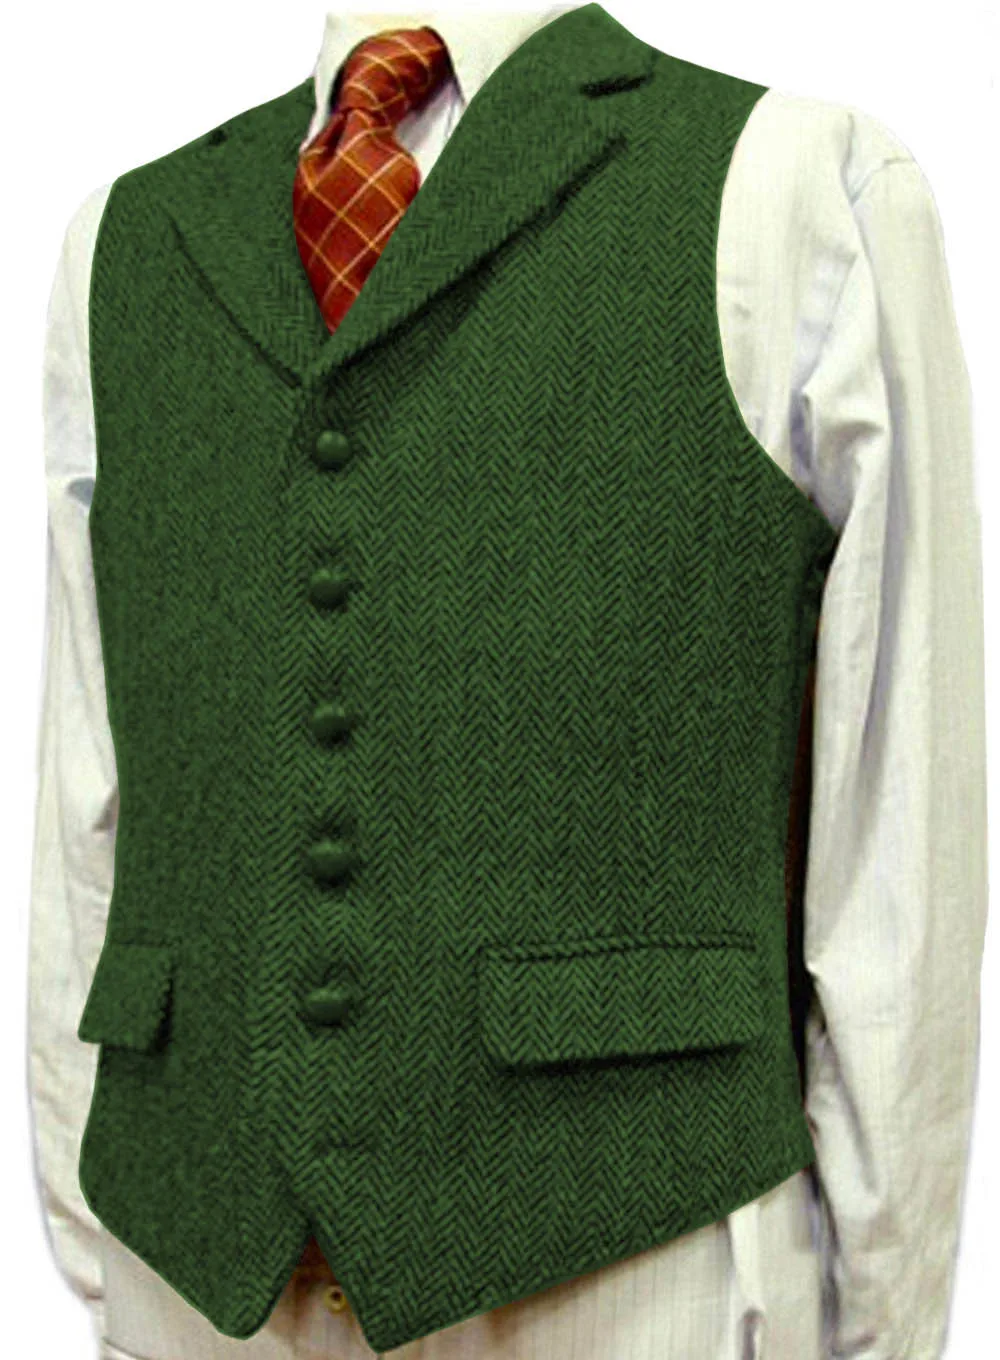 Мужской костюм жилет лацкан V образным вырезом шерсть елочка жилет Повседневный формальный бизнес Groomman для свадьбы зеленый/черный/коричневый/зеленый/серый - Цвет: Green